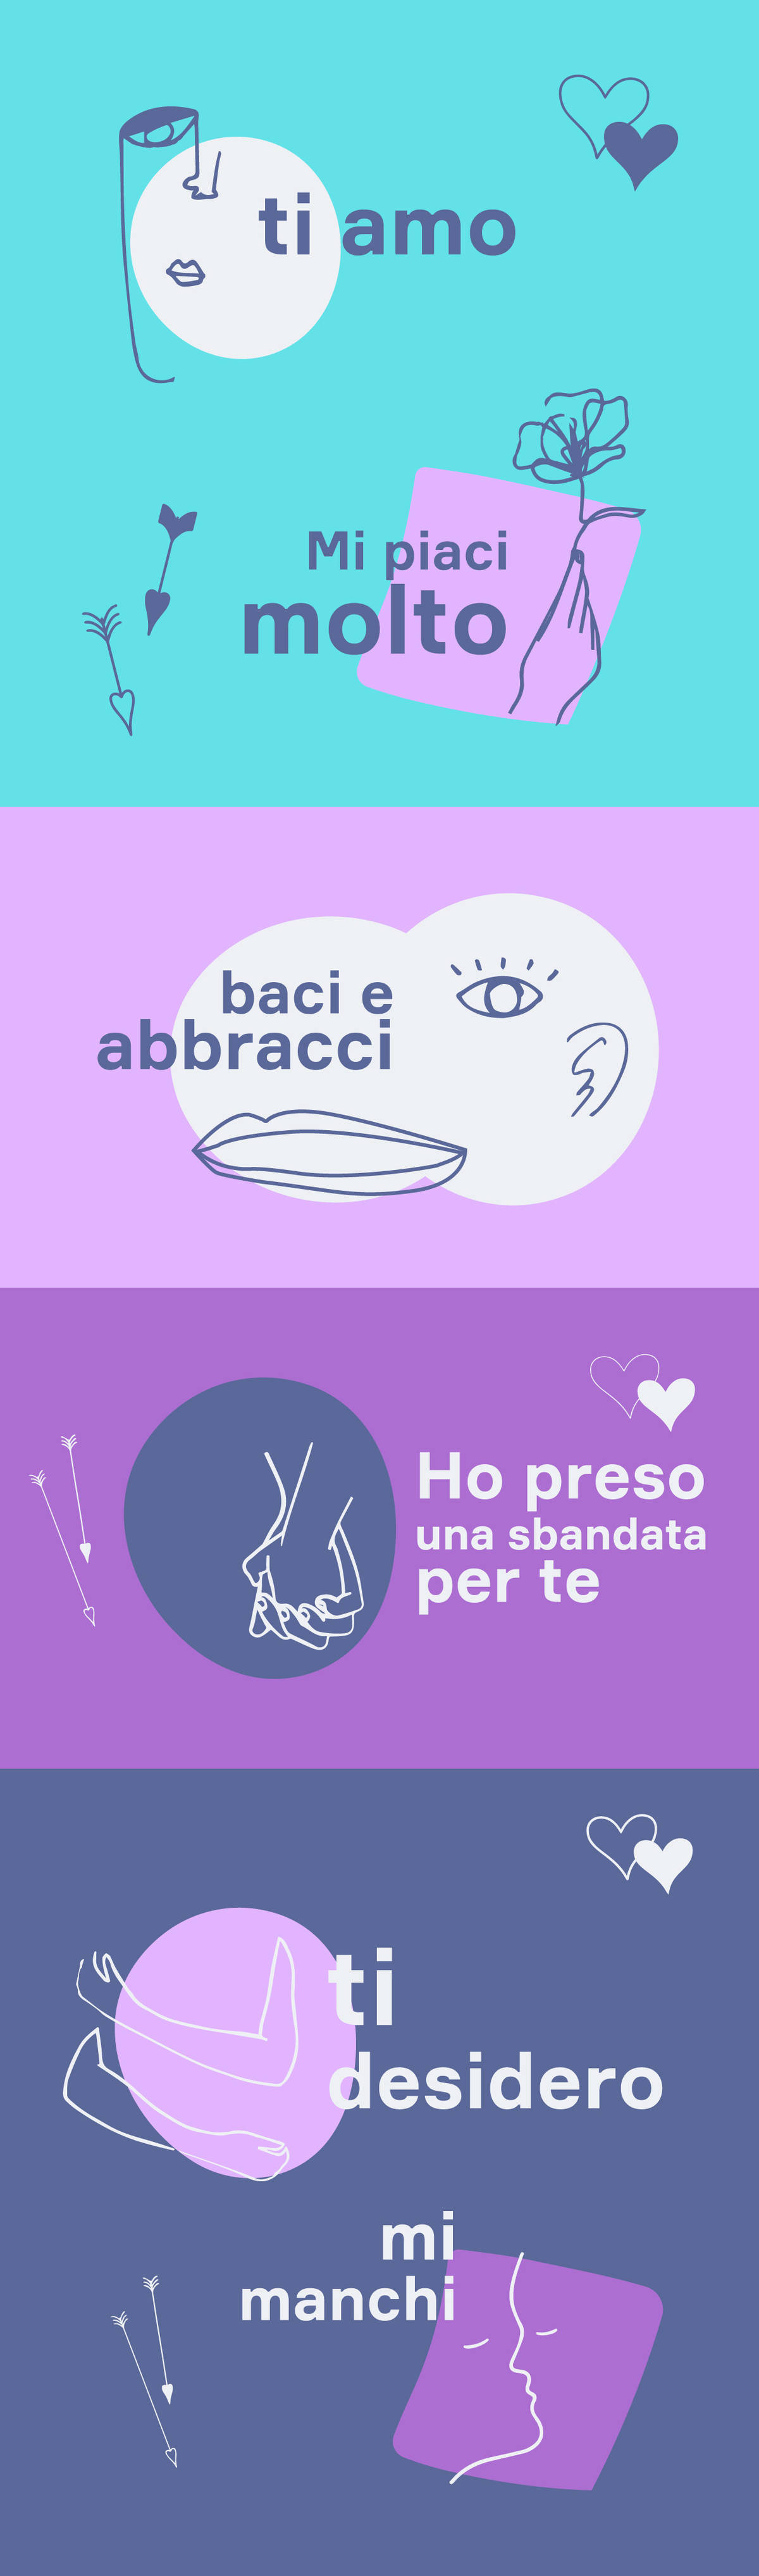 Italian Lesson 6  The difference between TI AMO and TI VOGLIO